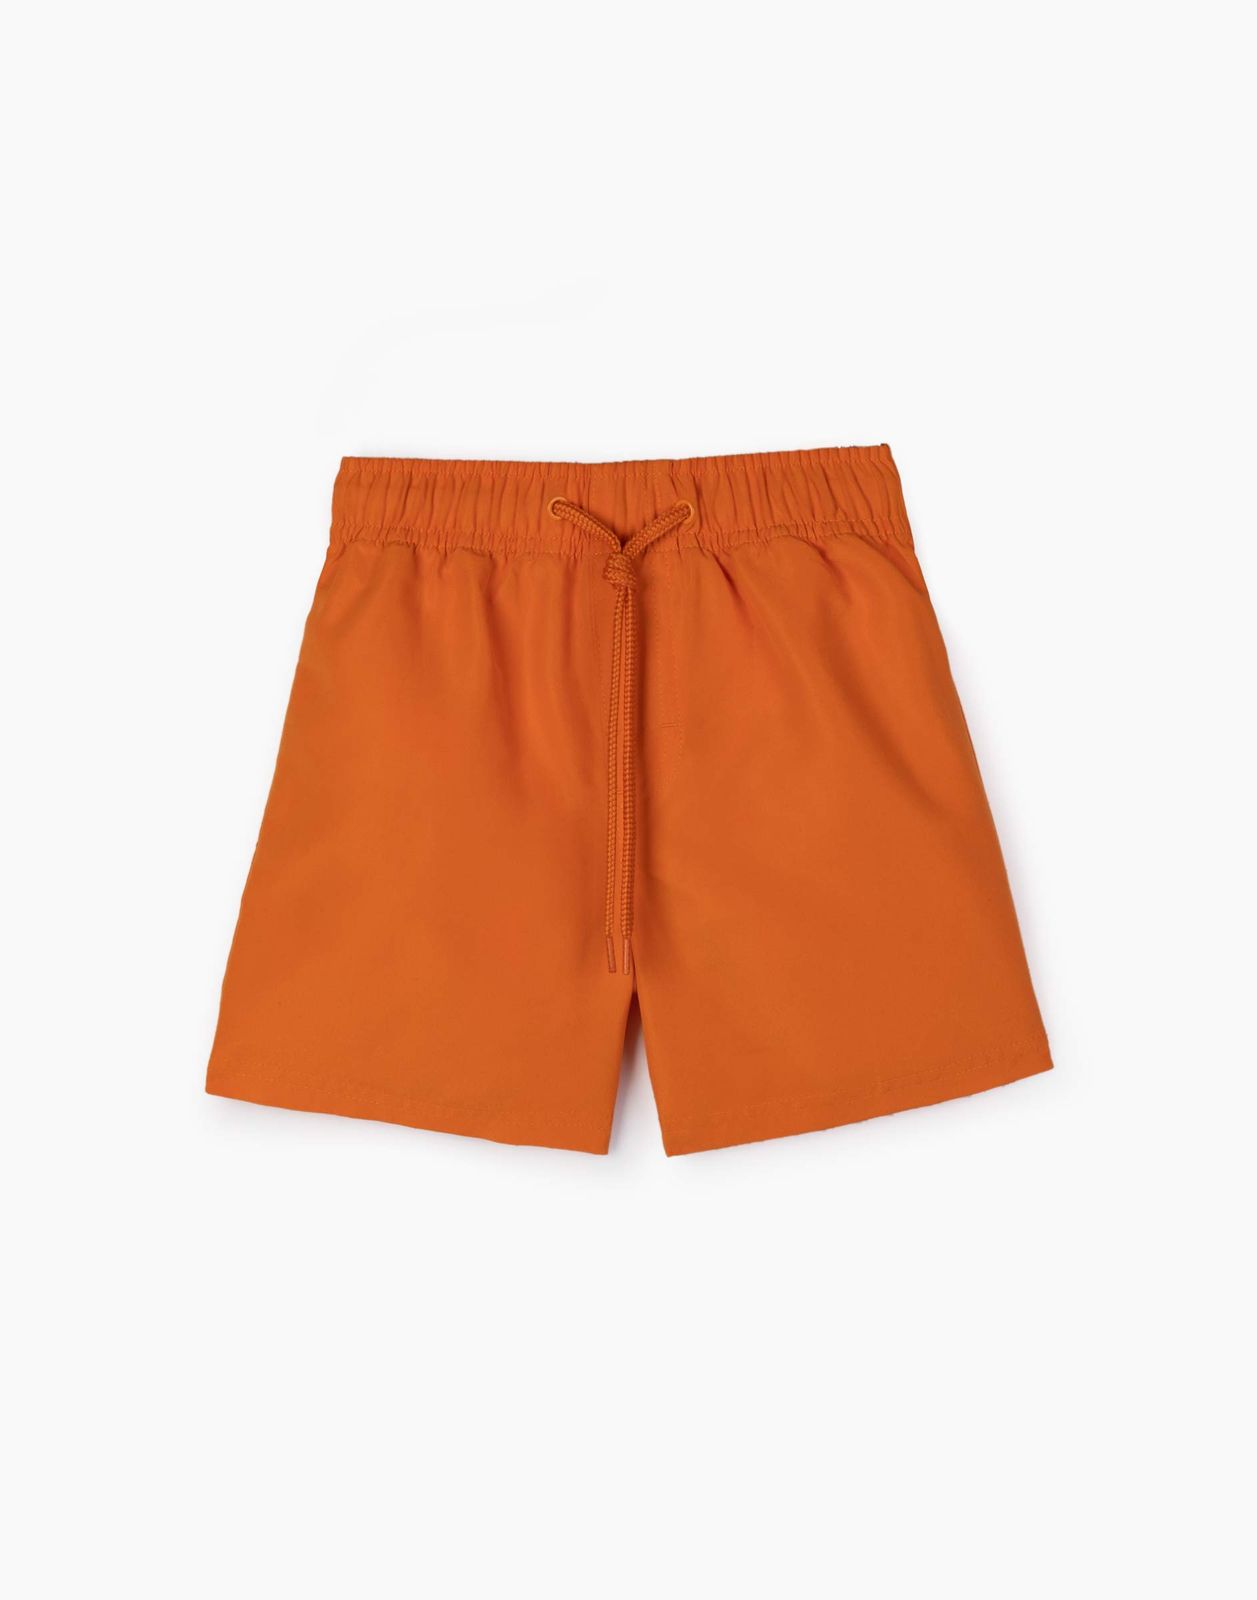 Пляжные шорты для мальчика Gloria Jeans BSM000720 оранжевый 12-24мес/92